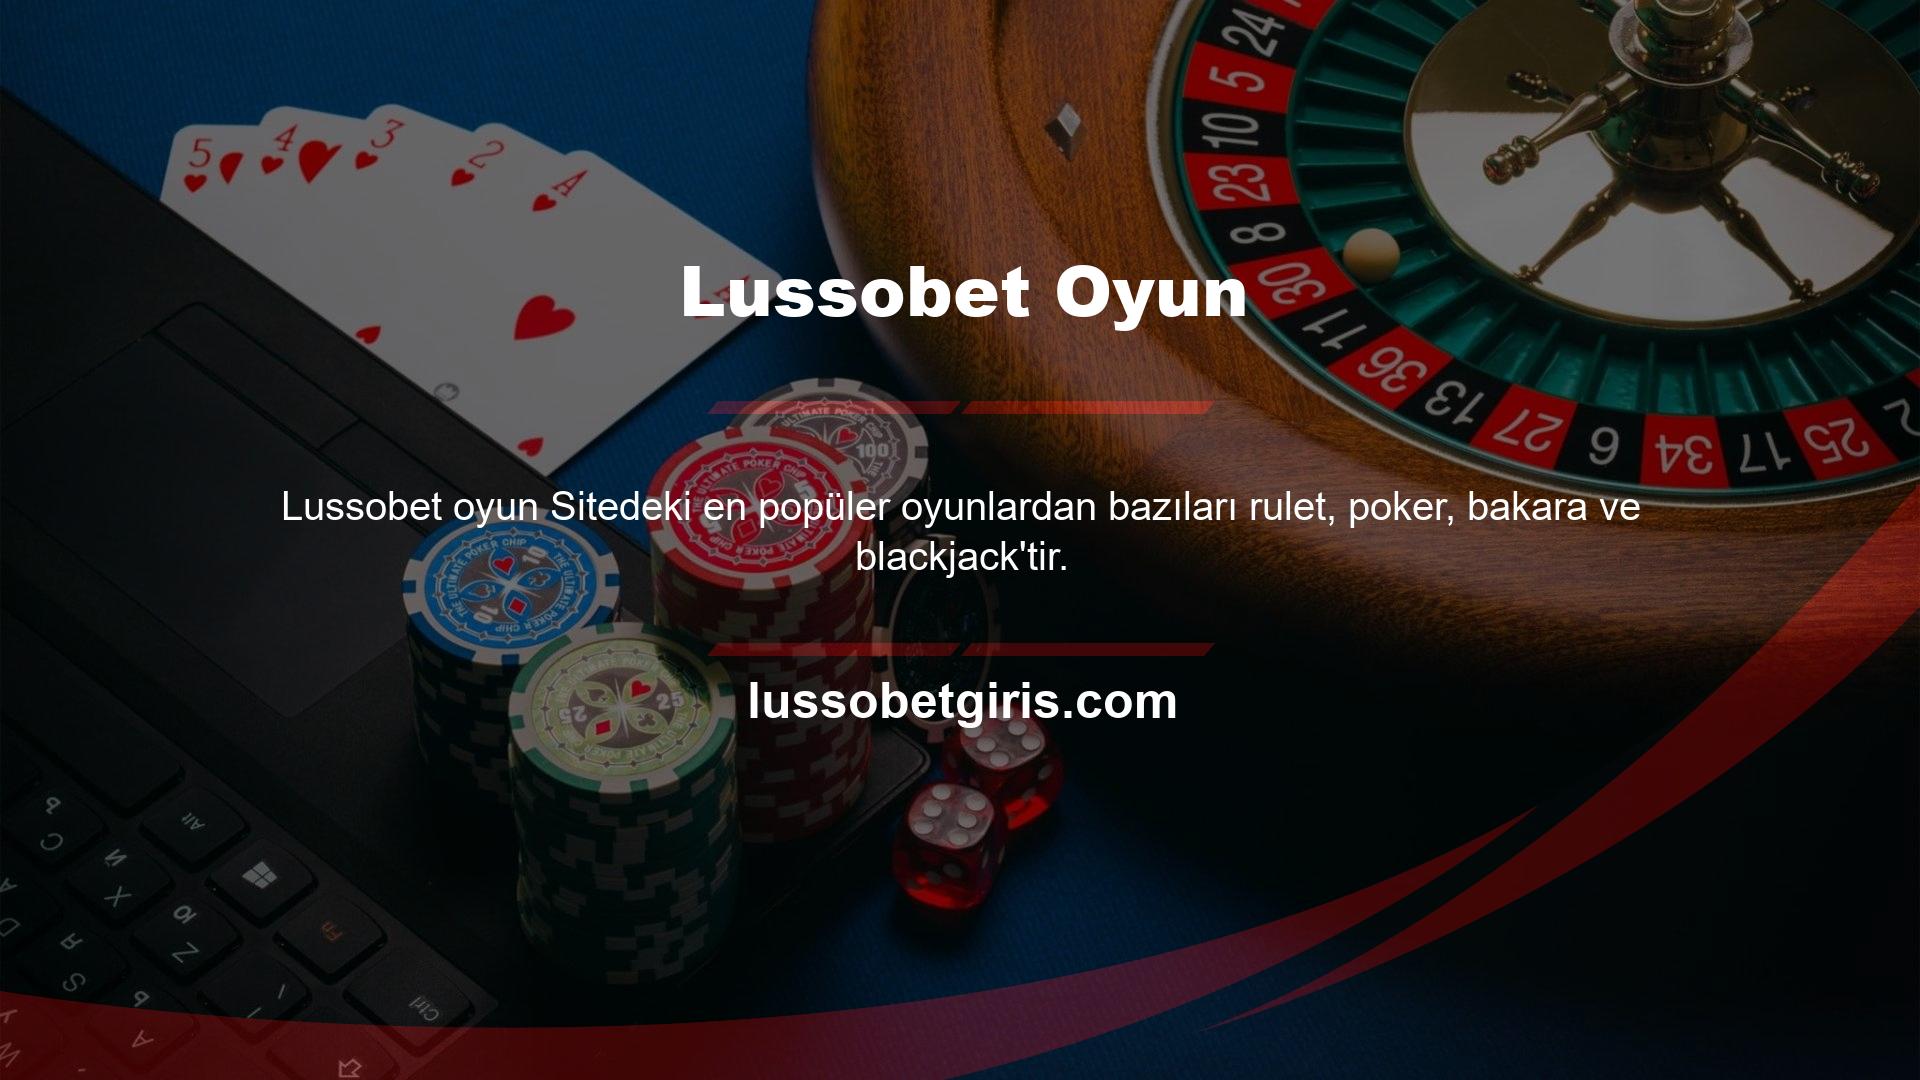 Lussobet, canlı casino kullanıcıları için çeşitli oyun içi promosyonlar sunmaktadır